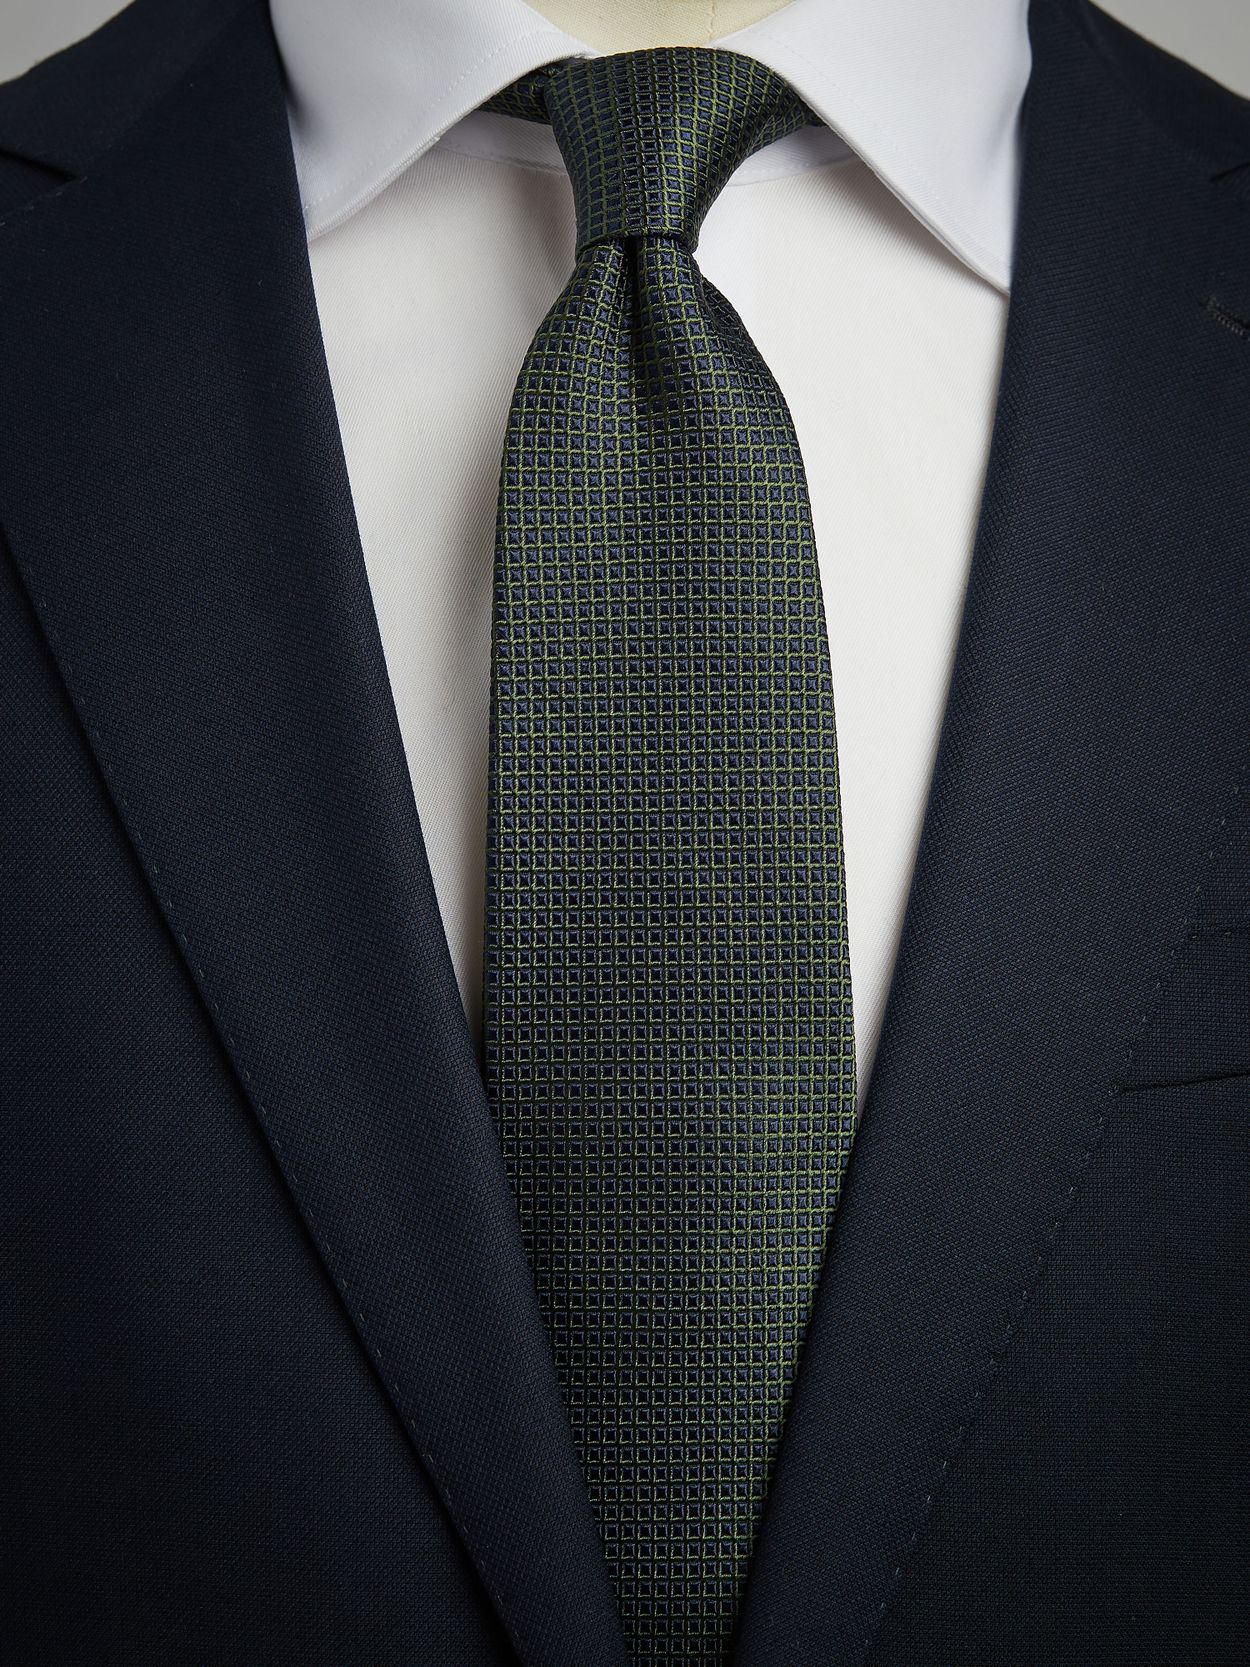 Blue & Green Tie Motif 